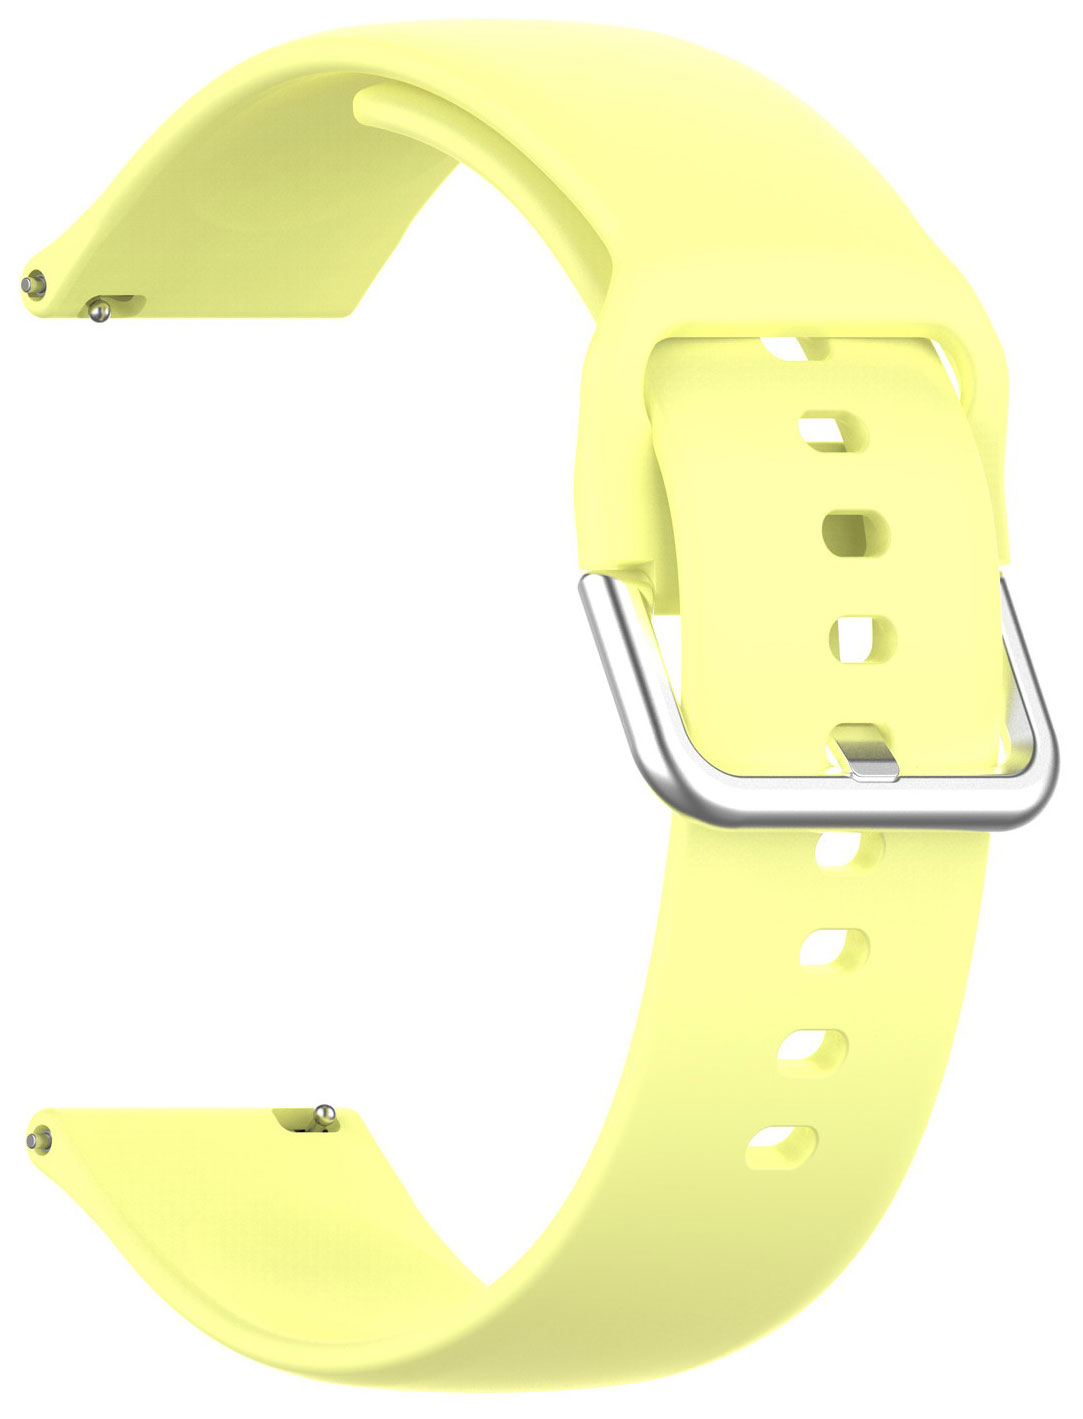 Ремешок для смарт-часов Red Line универсальный силиконовый, 22 mm, желтый силиконовый чехол на vivo y5s желтый человечек для виво ю5с